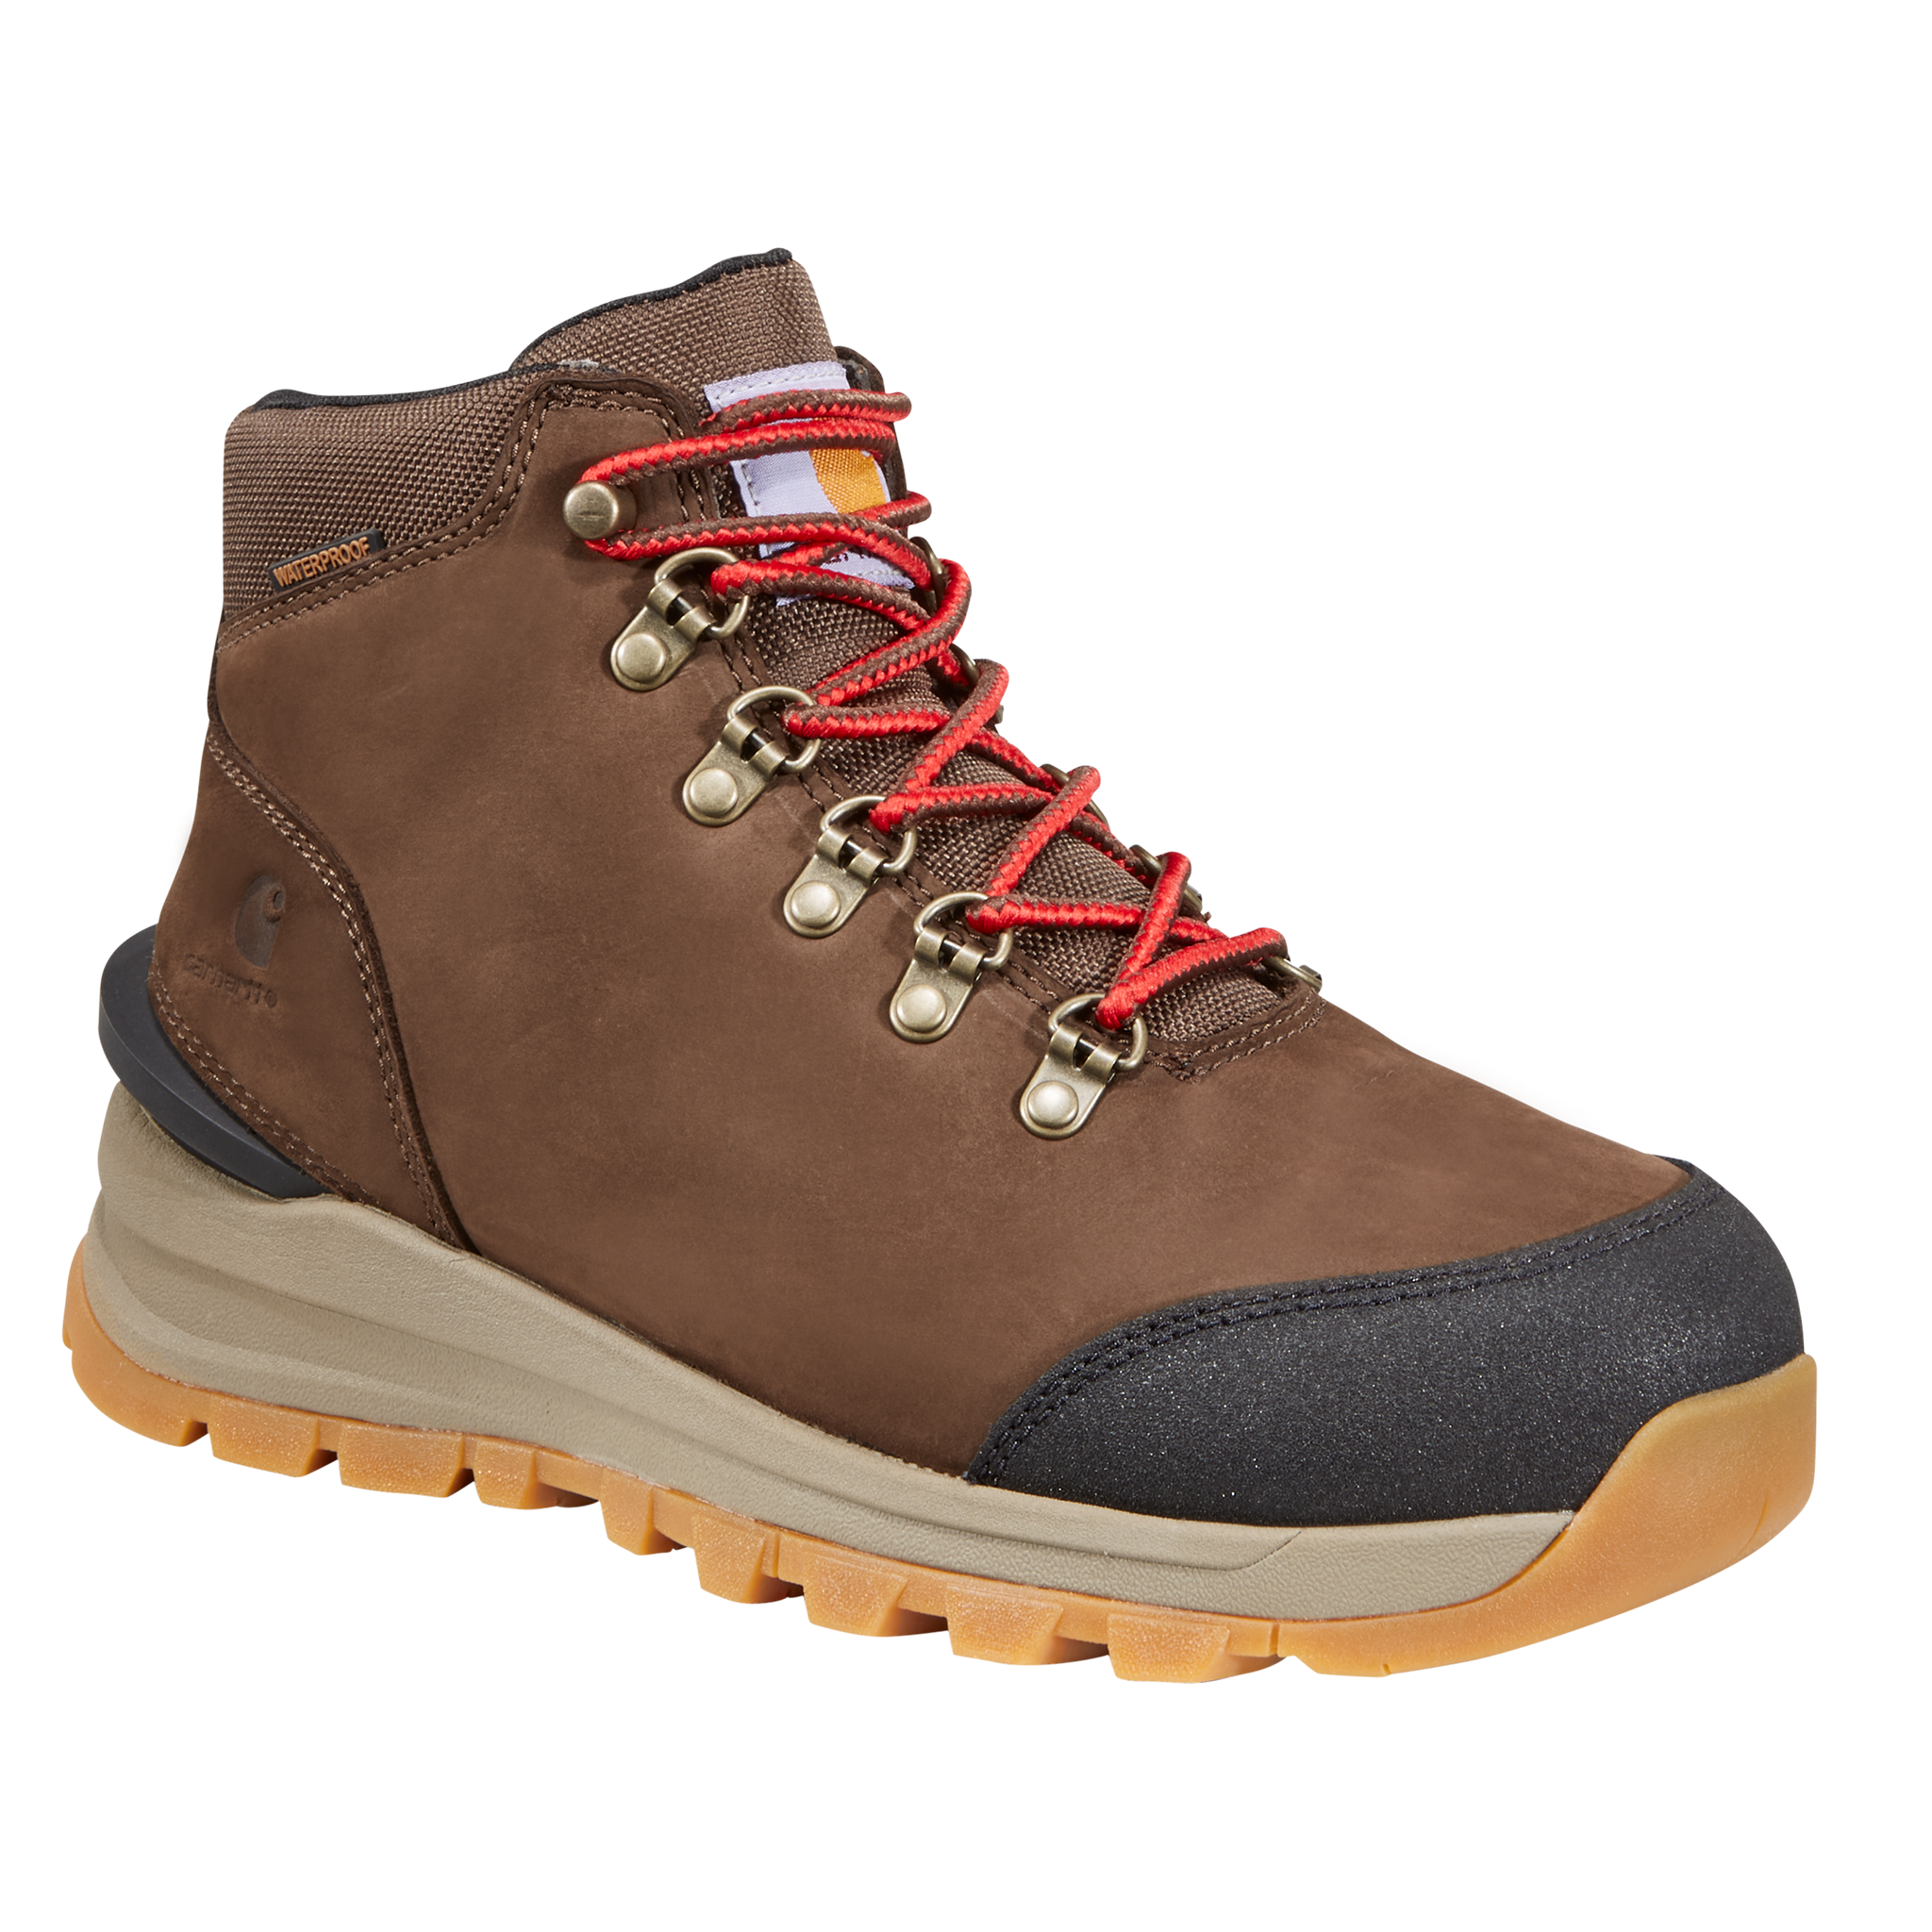 Carhartt Gilmore Waterproof Hiking Boots for Ladies - Dark Brown Nubuck - 8M